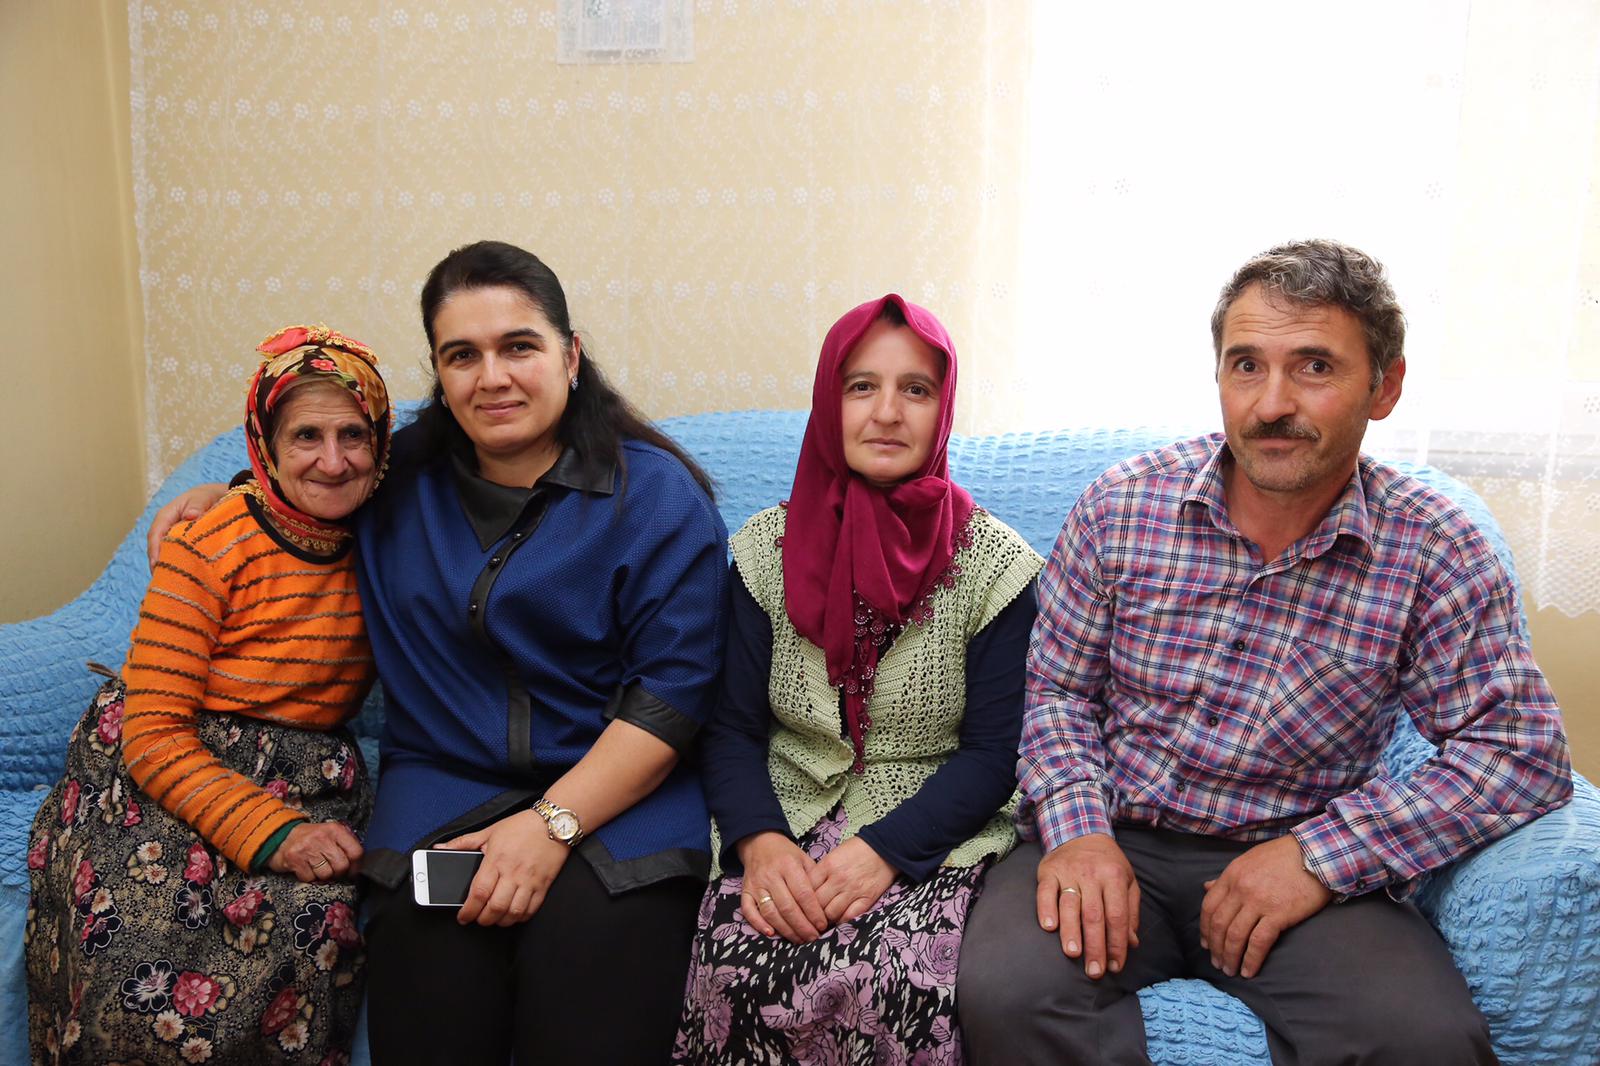 Bayan Yavuz, 6 Engelli Ailesini Ziyaret Etti